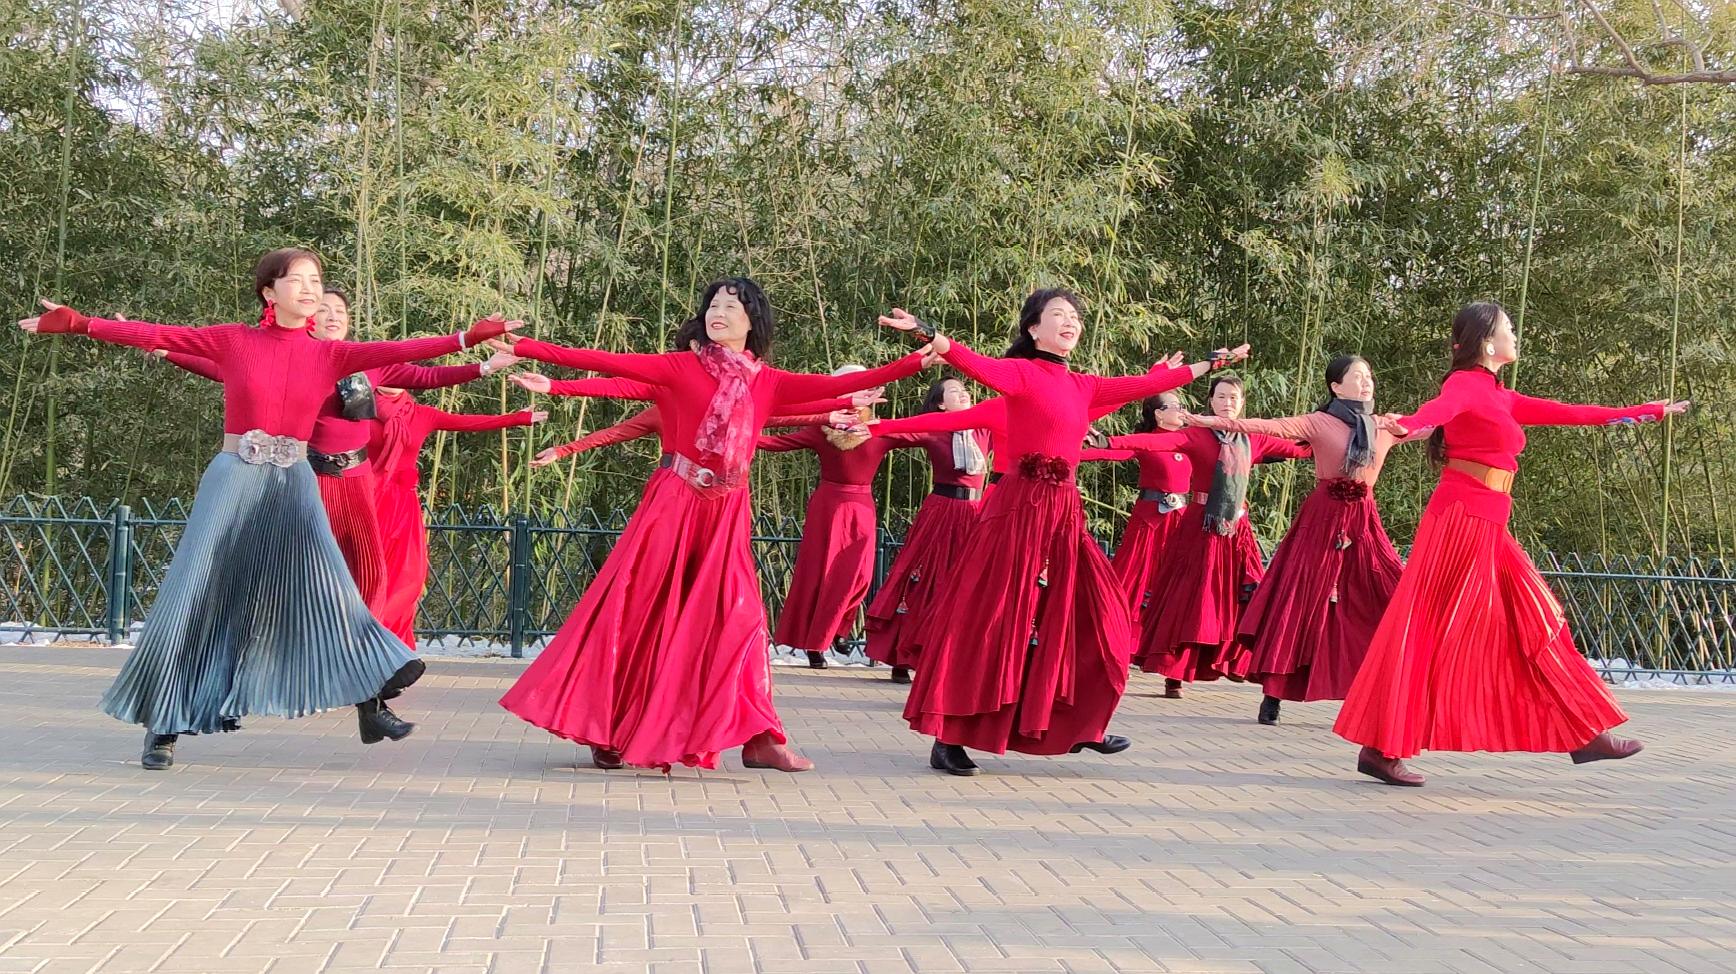 广场舞《舞动中国》让世界精彩,脚步飞起来跳出时尚节拍